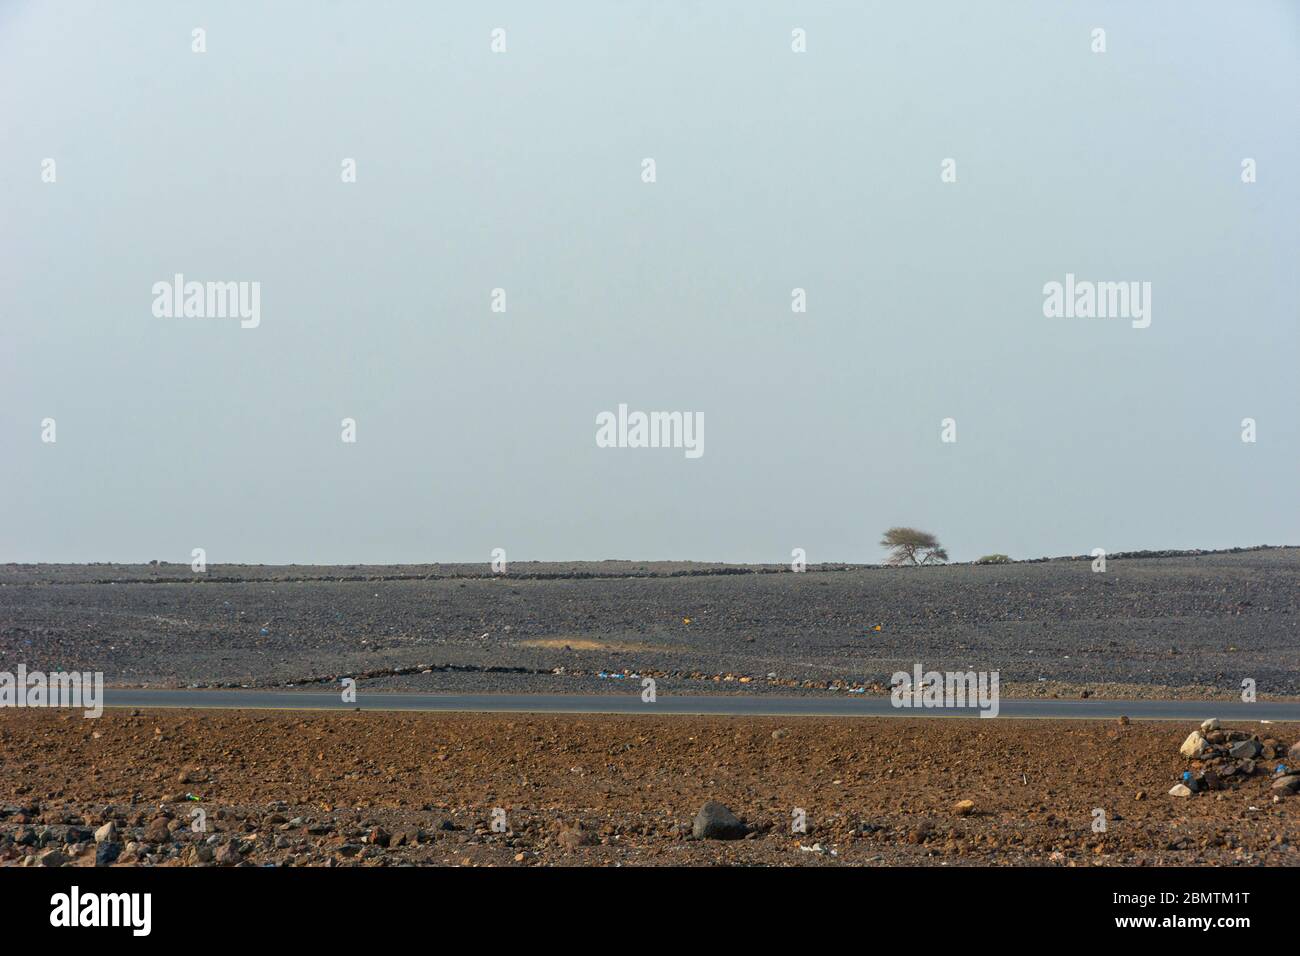 Arbre solitaire dans la dépression de Danakil, désert de pierre, Ethiopie Banque D'Images